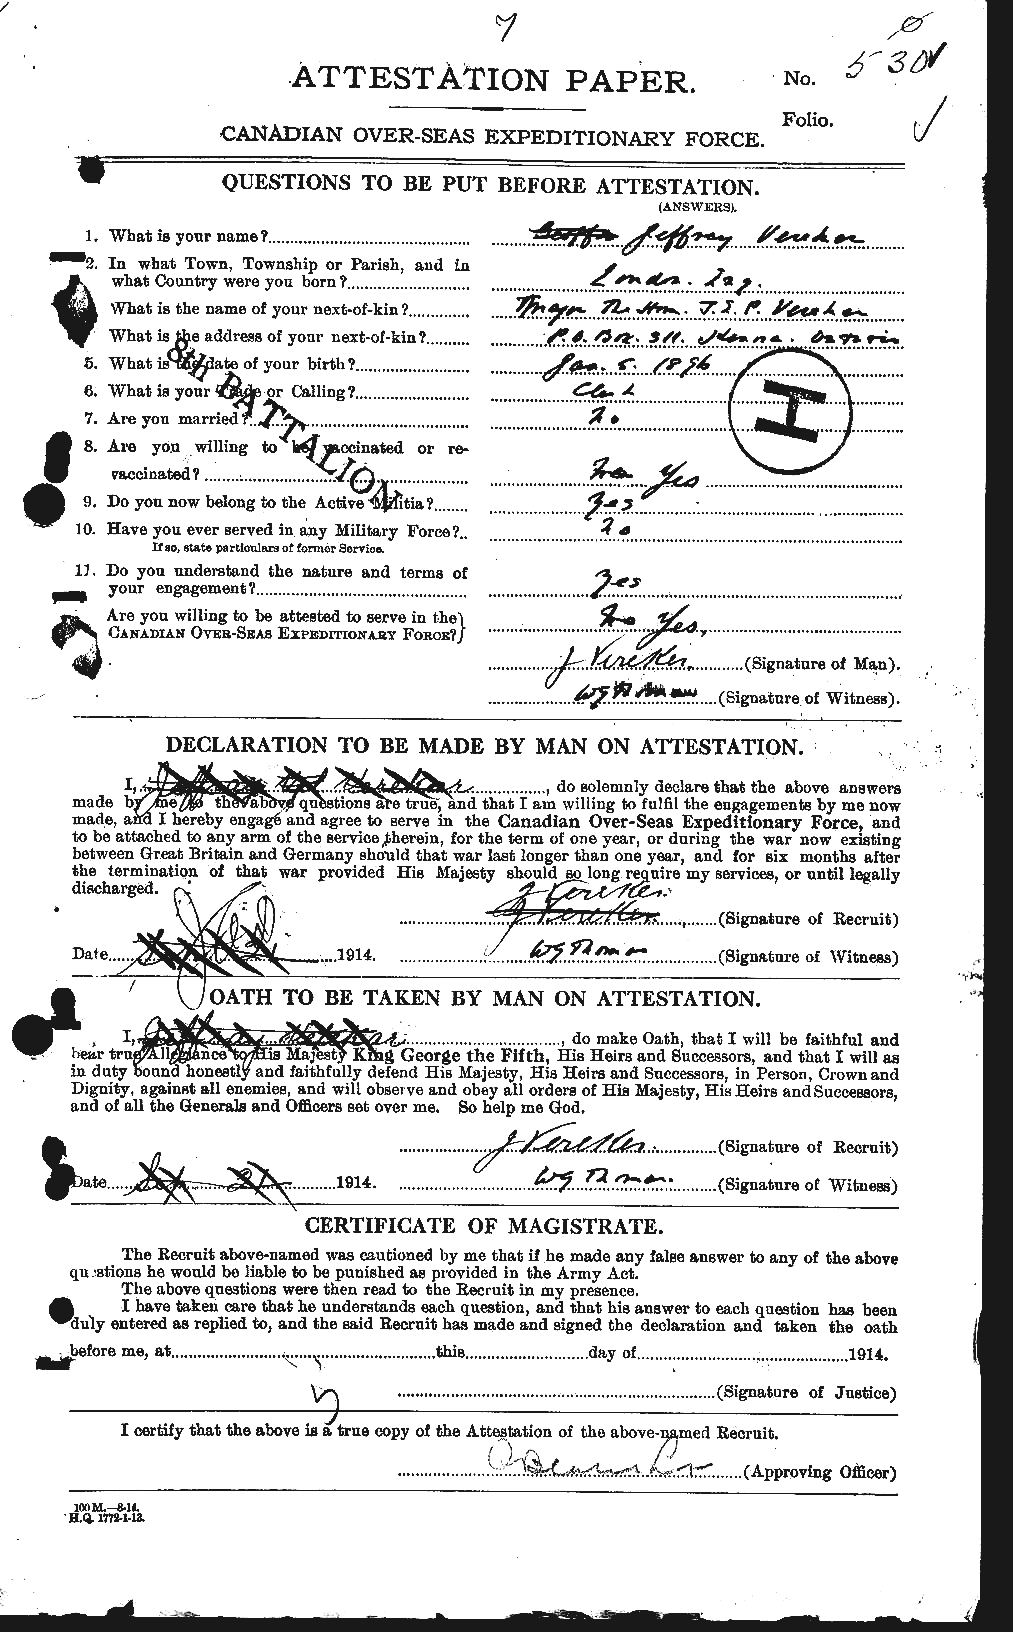 Dossiers du Personnel de la Première Guerre mondiale - CEC 649445a